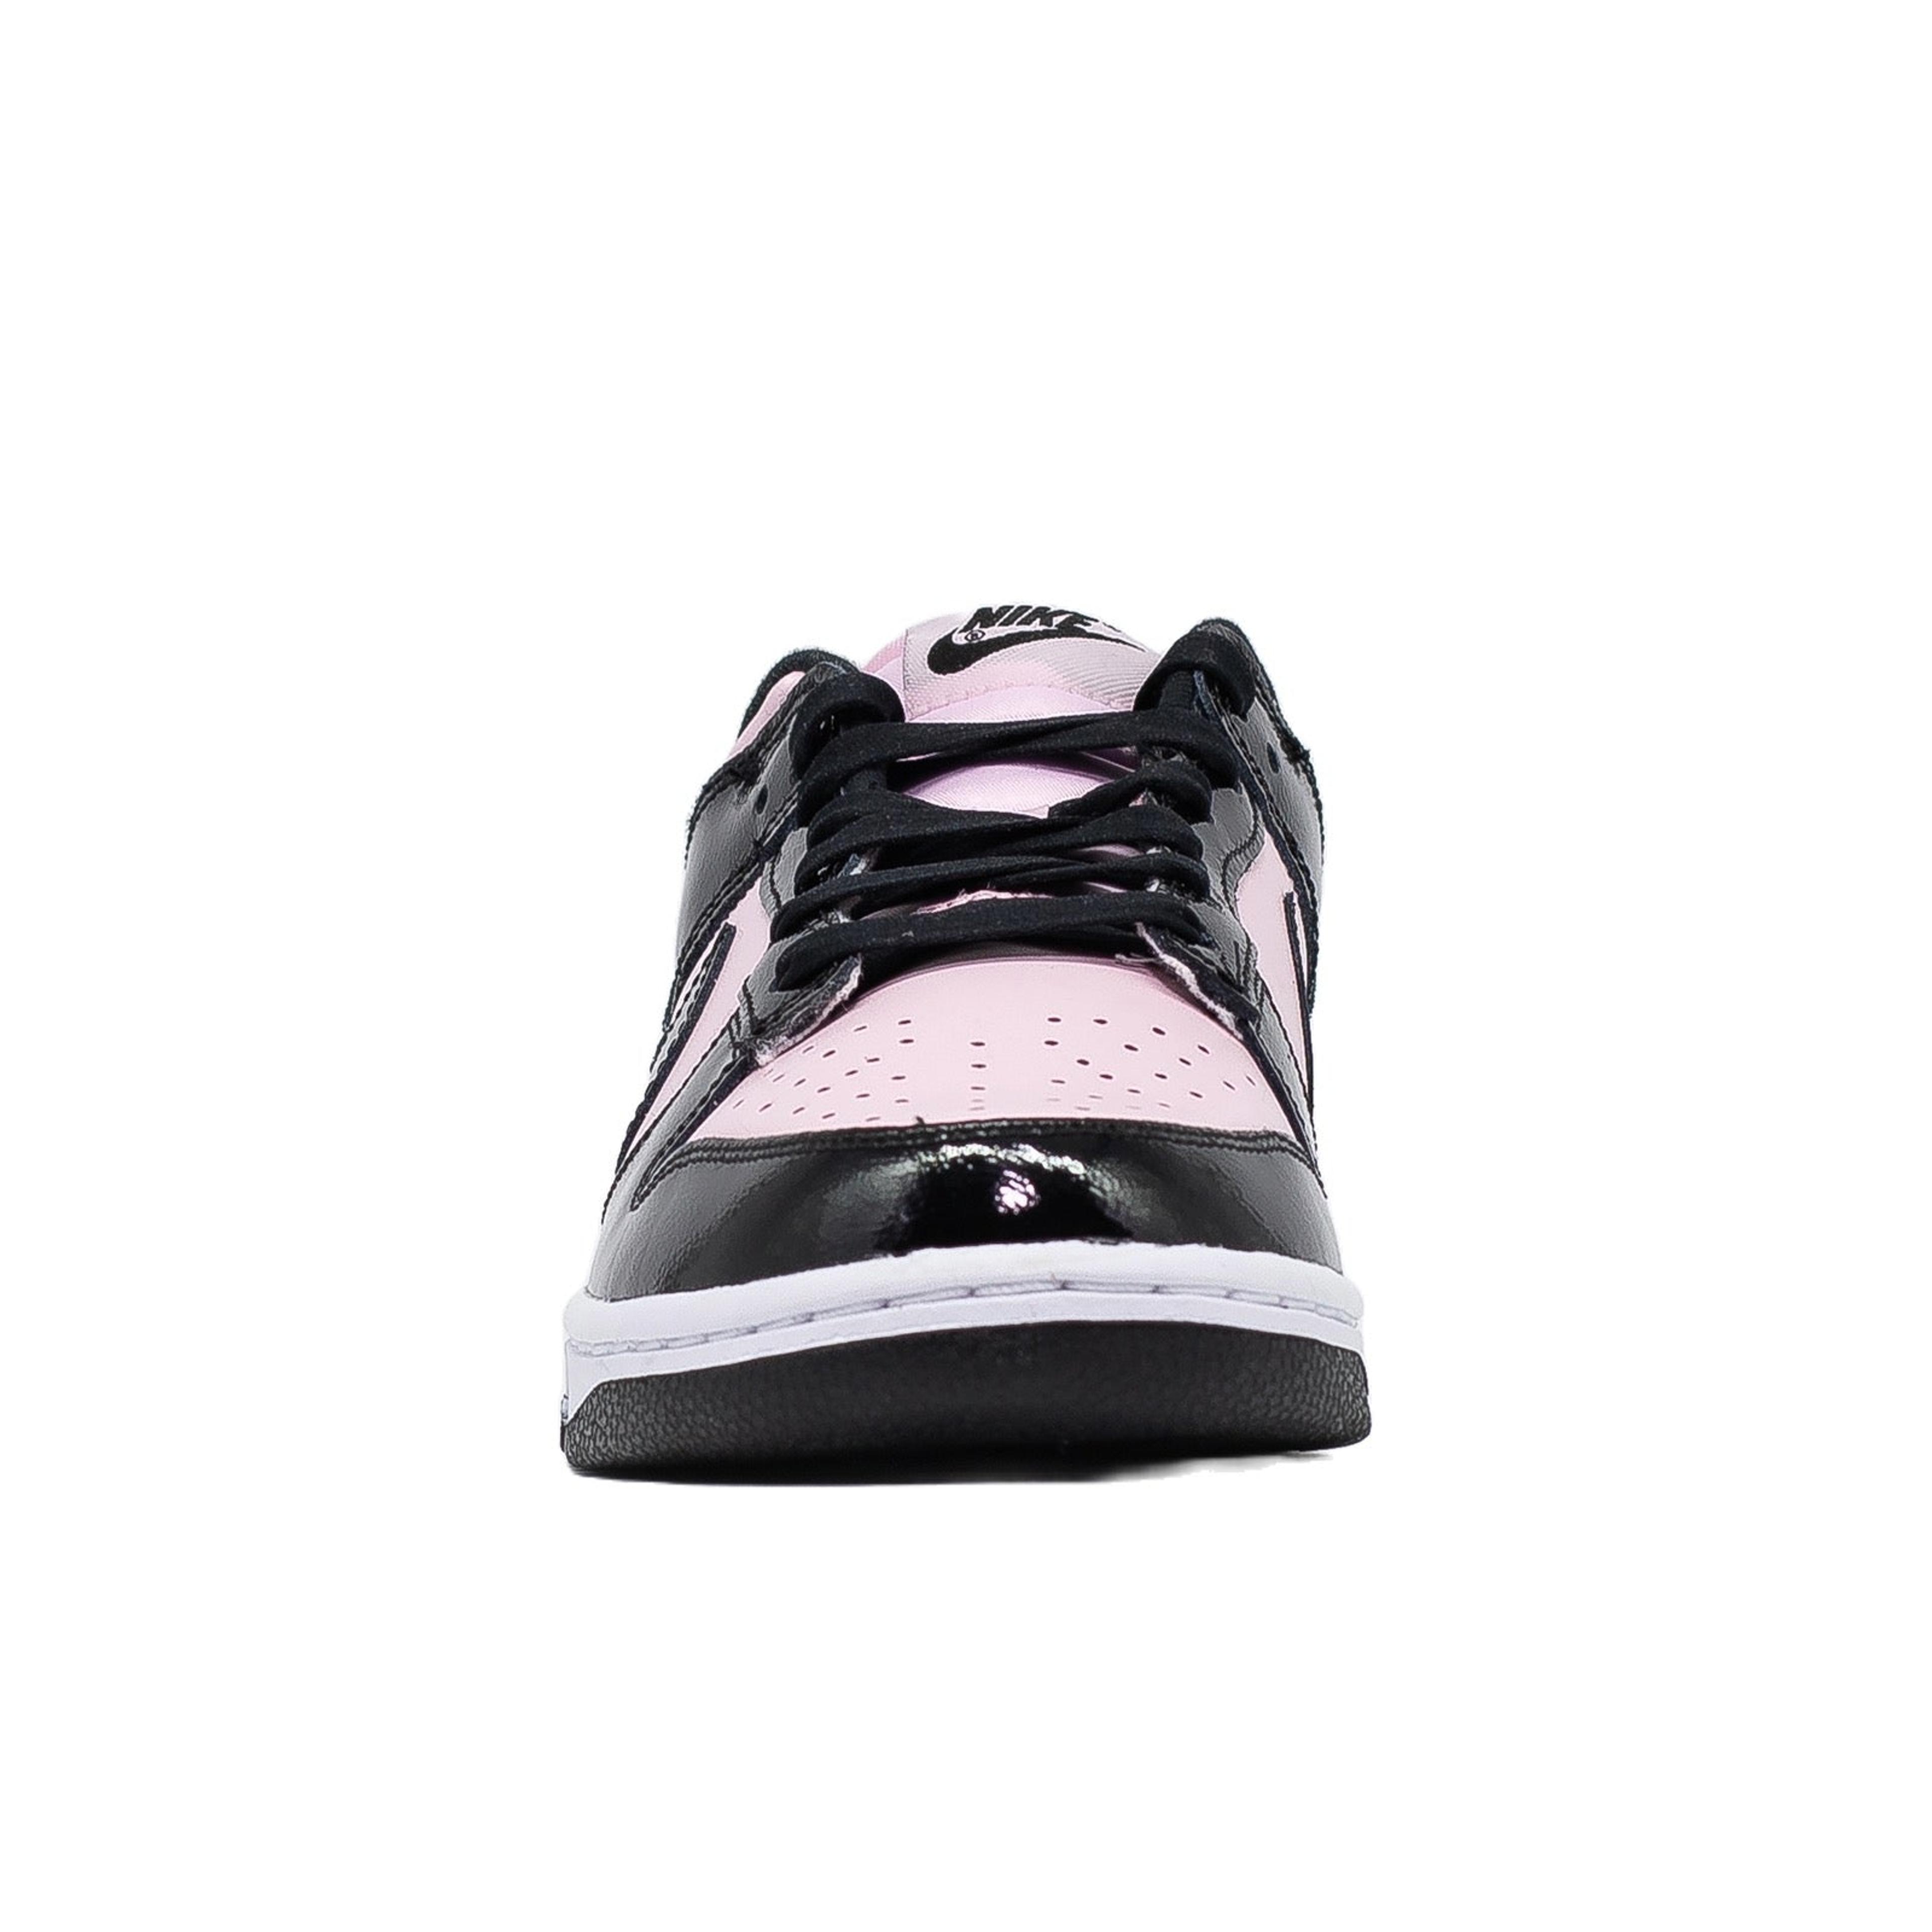 Alternate View 2 of Women's Nike Dunk Low, Pink Foam Black